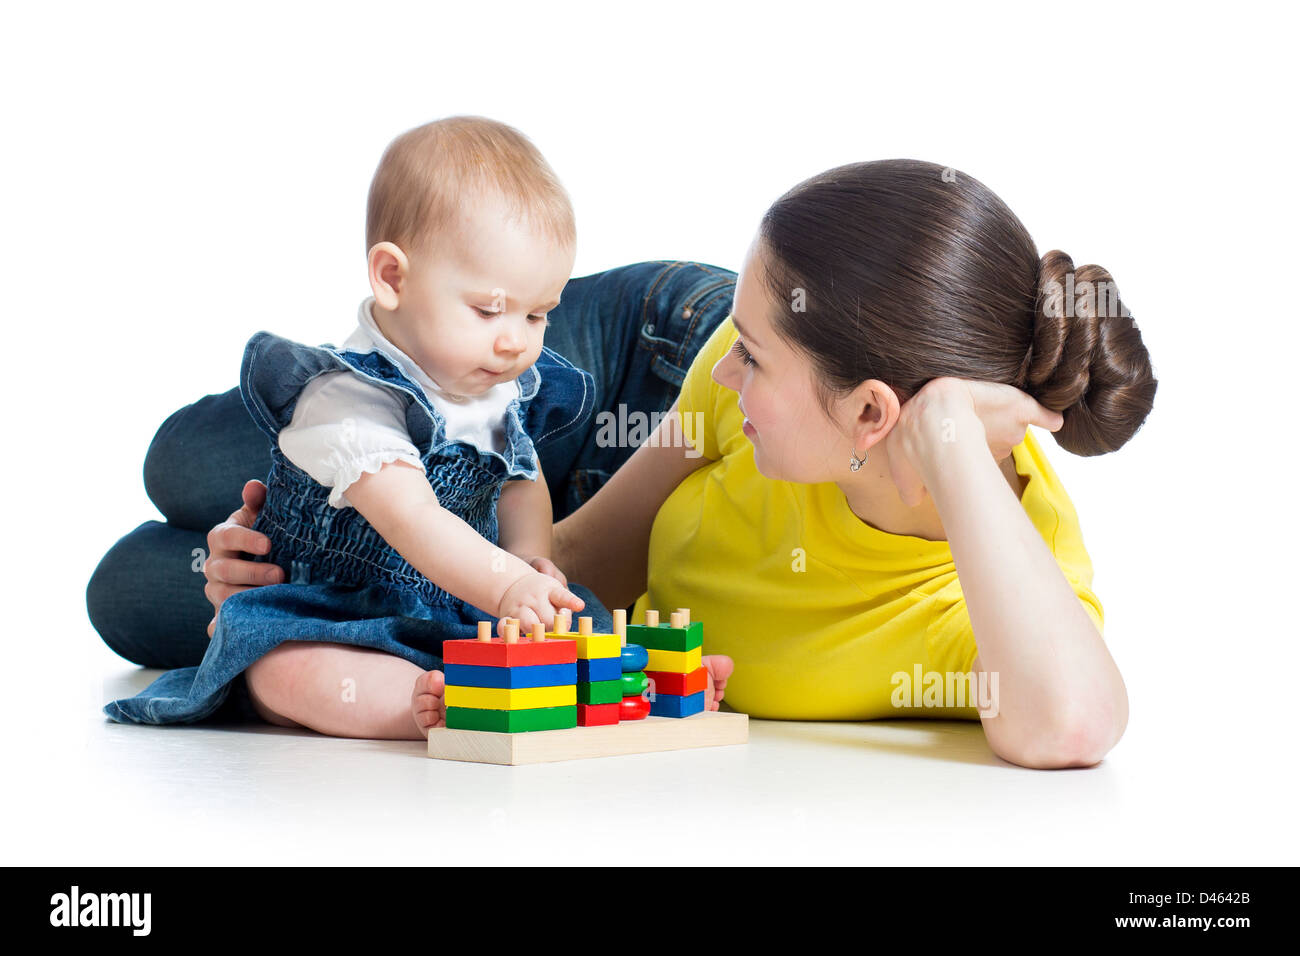 La mère et l'enfant jouant avec des blocs de construction toy isolated on white Banque D'Images